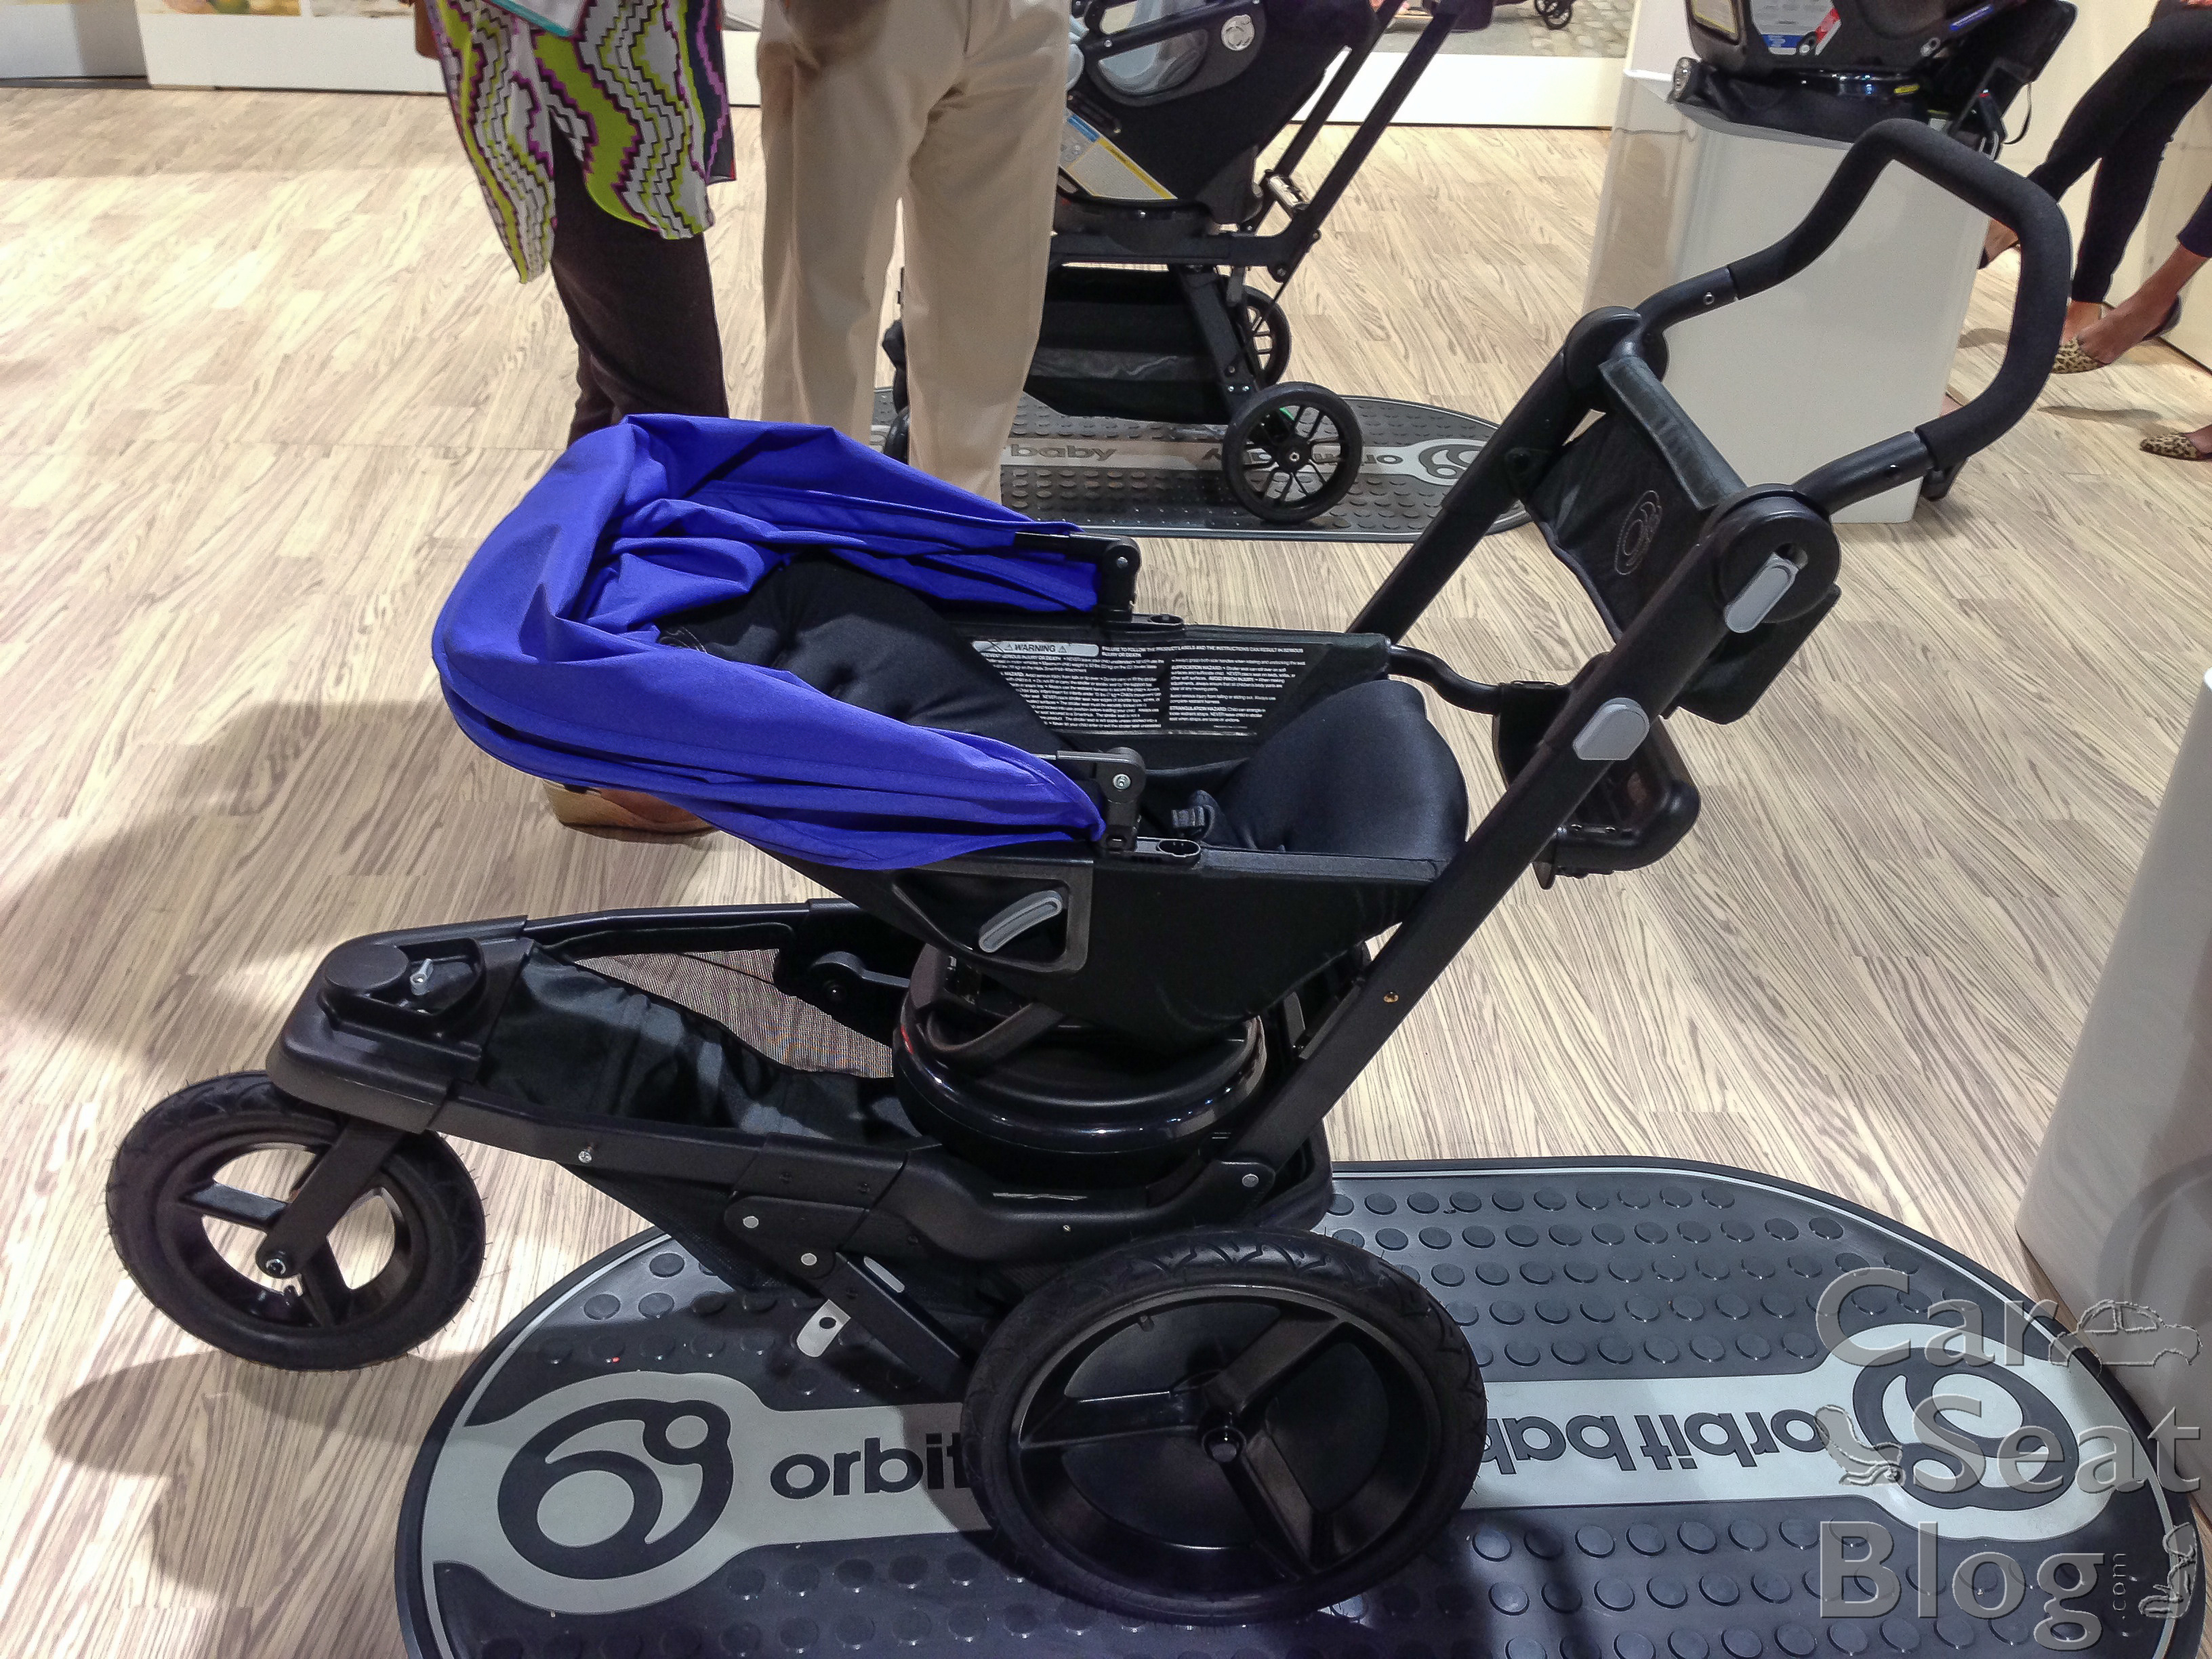 orbit twin stroller